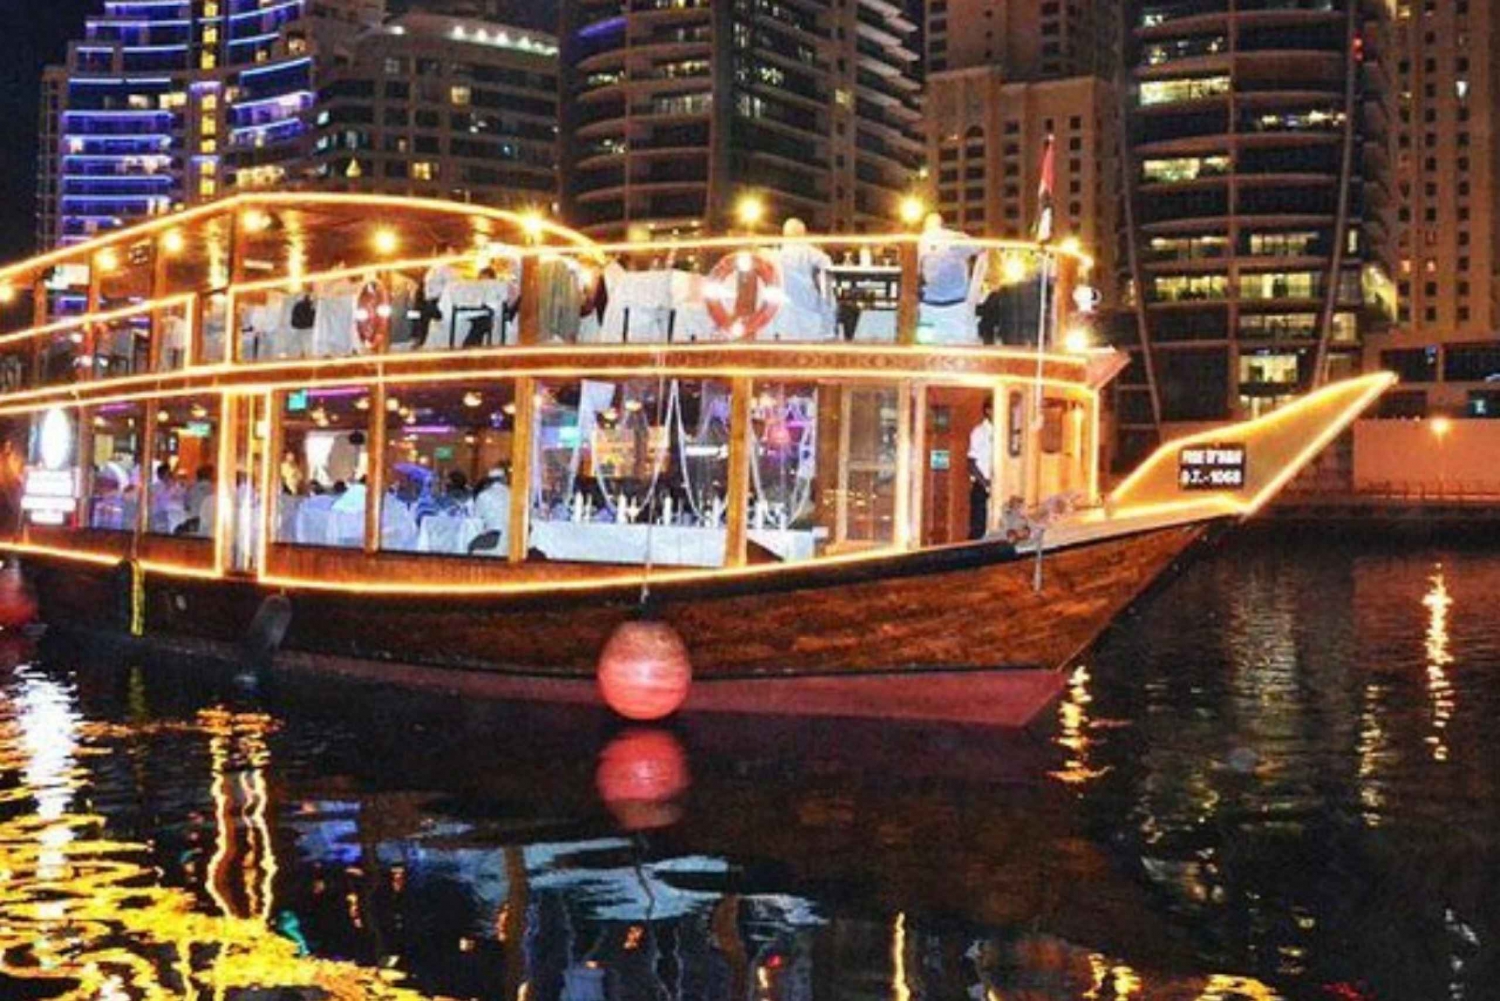 Dubai: Crucero con cena en dhow por la ría o el puerto deportivo con espectáculos en directo